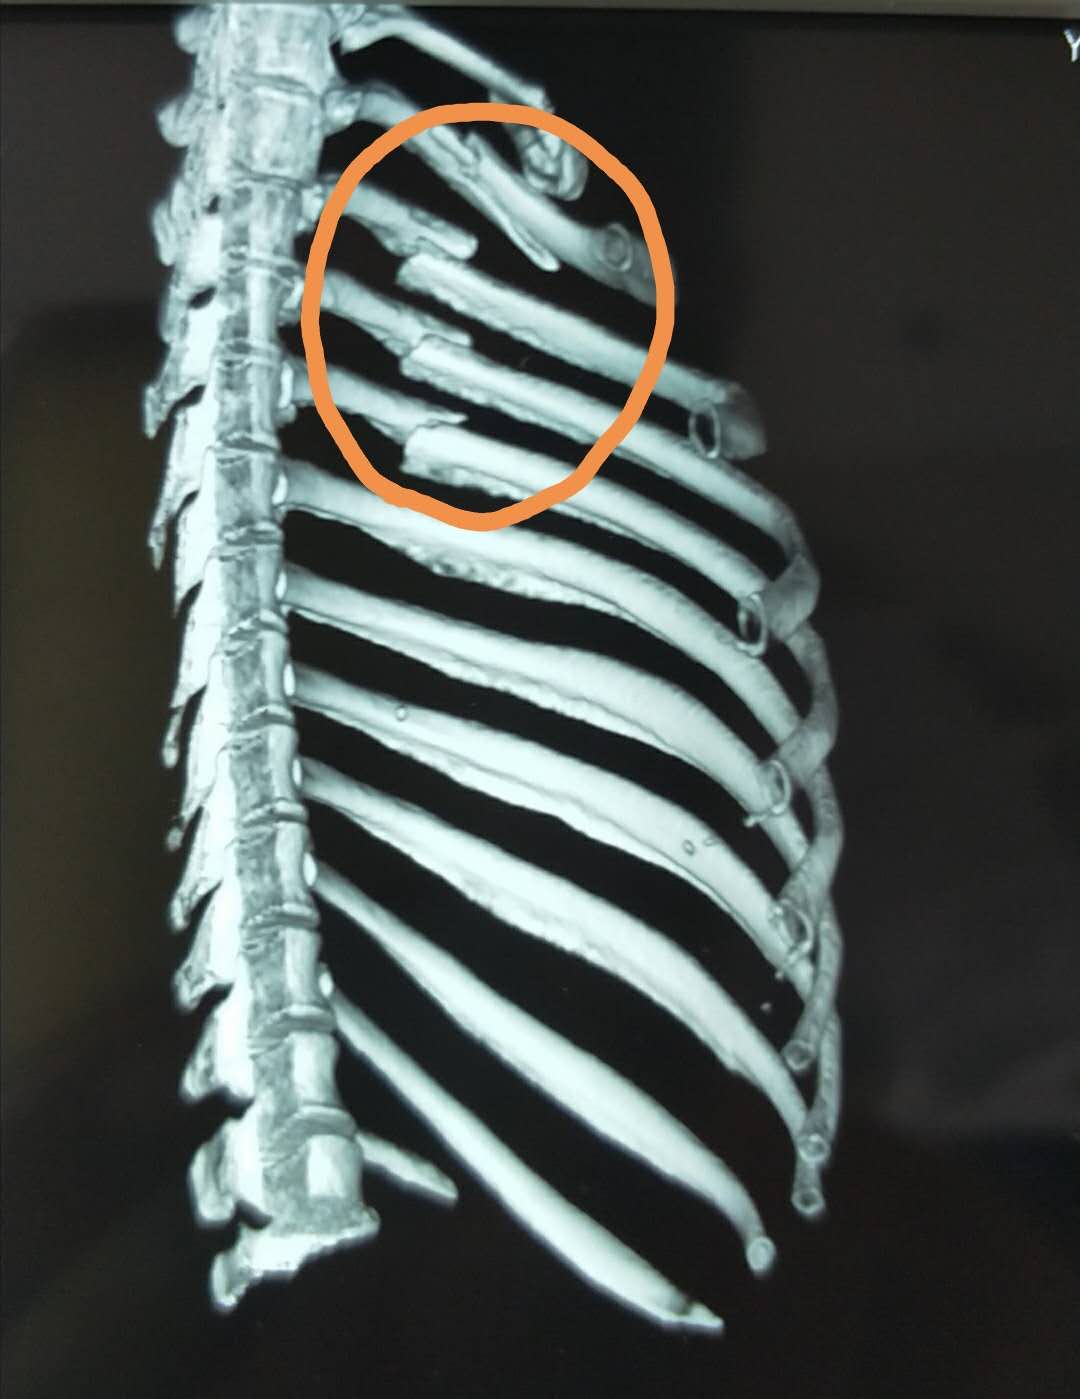 双侧多根单处肋骨骨折-人身损伤基础医学-医学